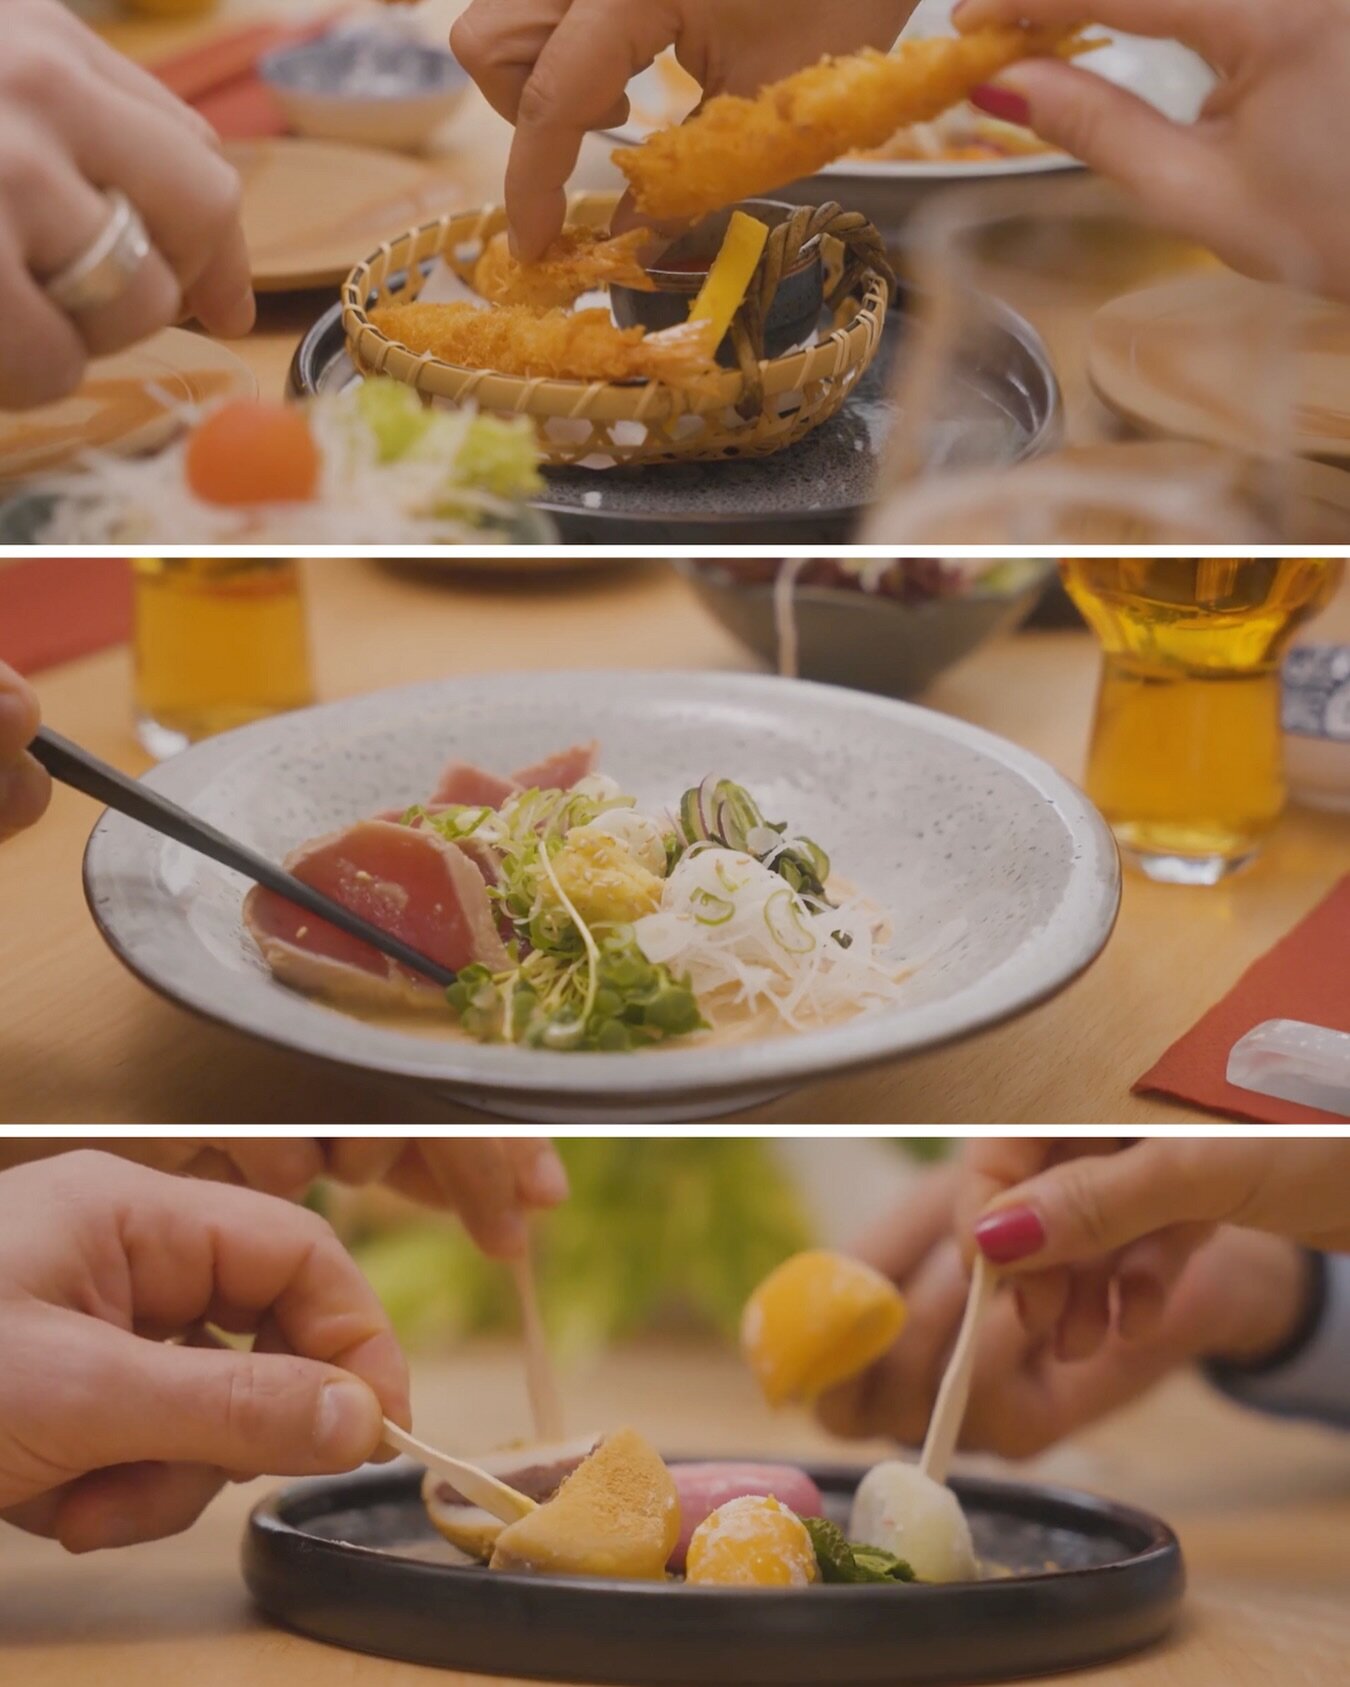 Stills 🎬 aus meinem neusten Projekt.
Aufnahmen, die Lust auf mehr machen 😍✨.
-
🍣🍤🍻
-
Kunde: @kento_schaffhausen 
In Kollaboration mit @mia_ra_photo @mialyn0 
-
#foodvideography #schaffhausen #kyotoinschaffhausen #kento